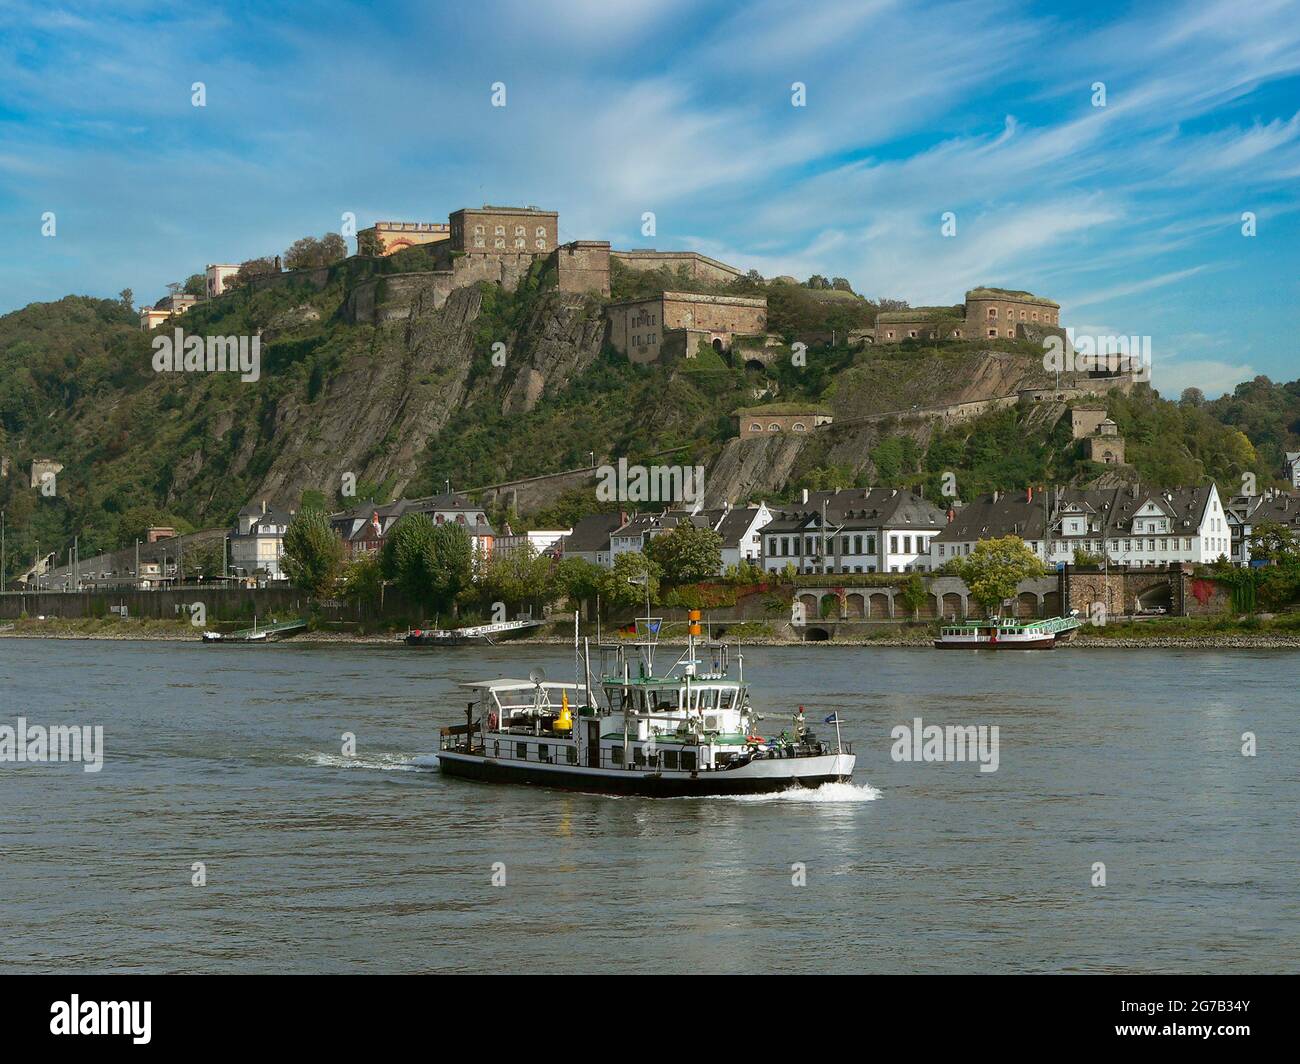 Festung Ehrenbreitstein, Rhein, Koblenz, Deutschland Stockfoto